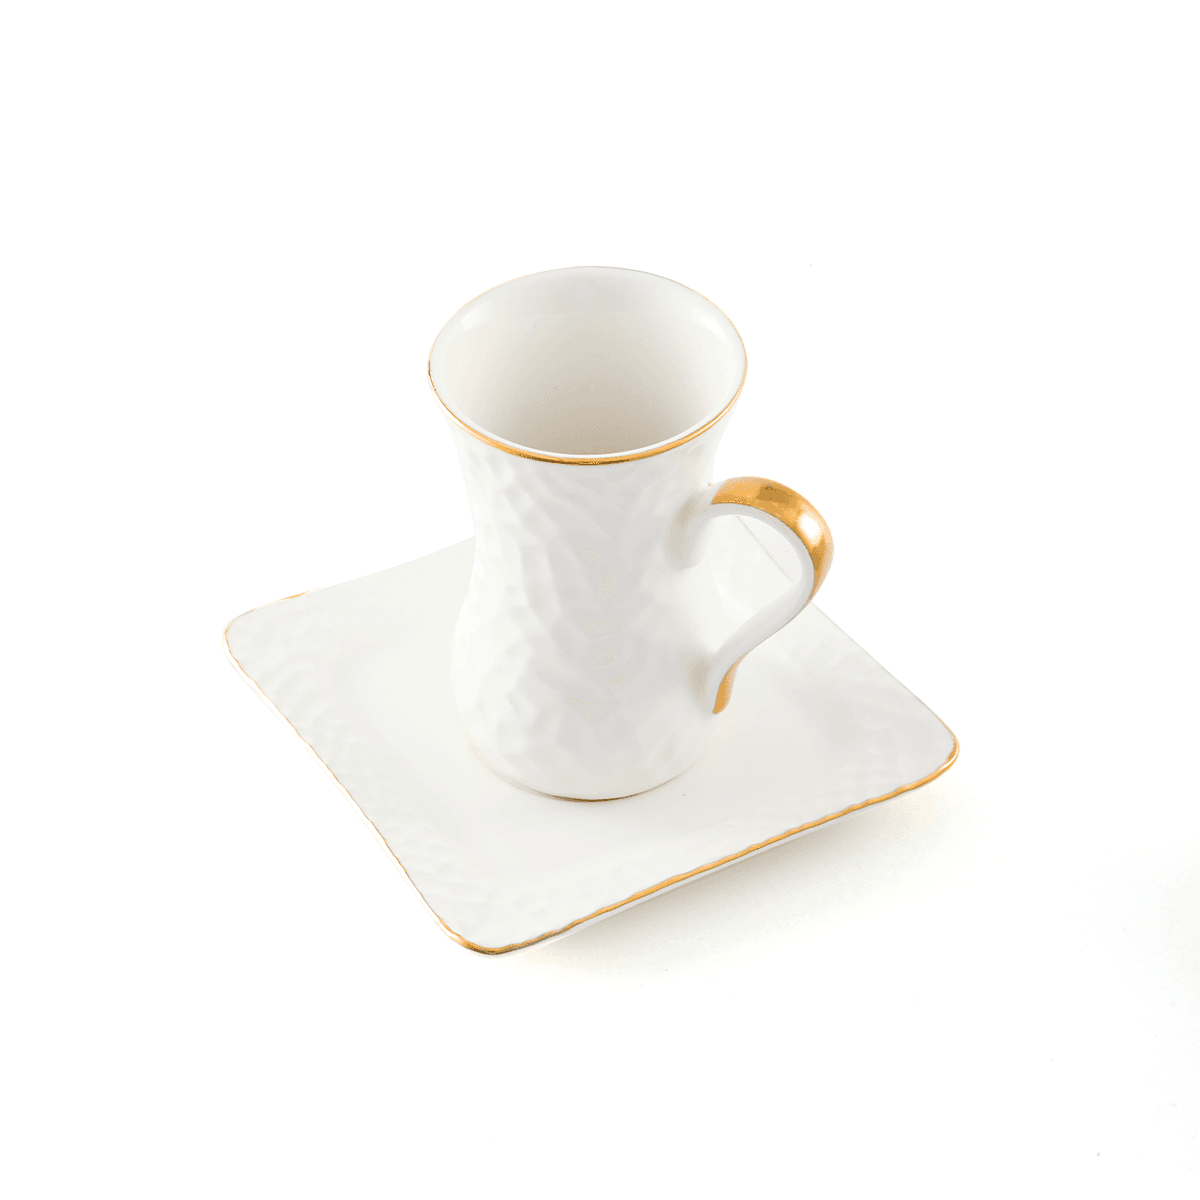 Decopor Porcelain 12 Piece Tea Cup and Saucer Set 100 ml White Gold Porcelain